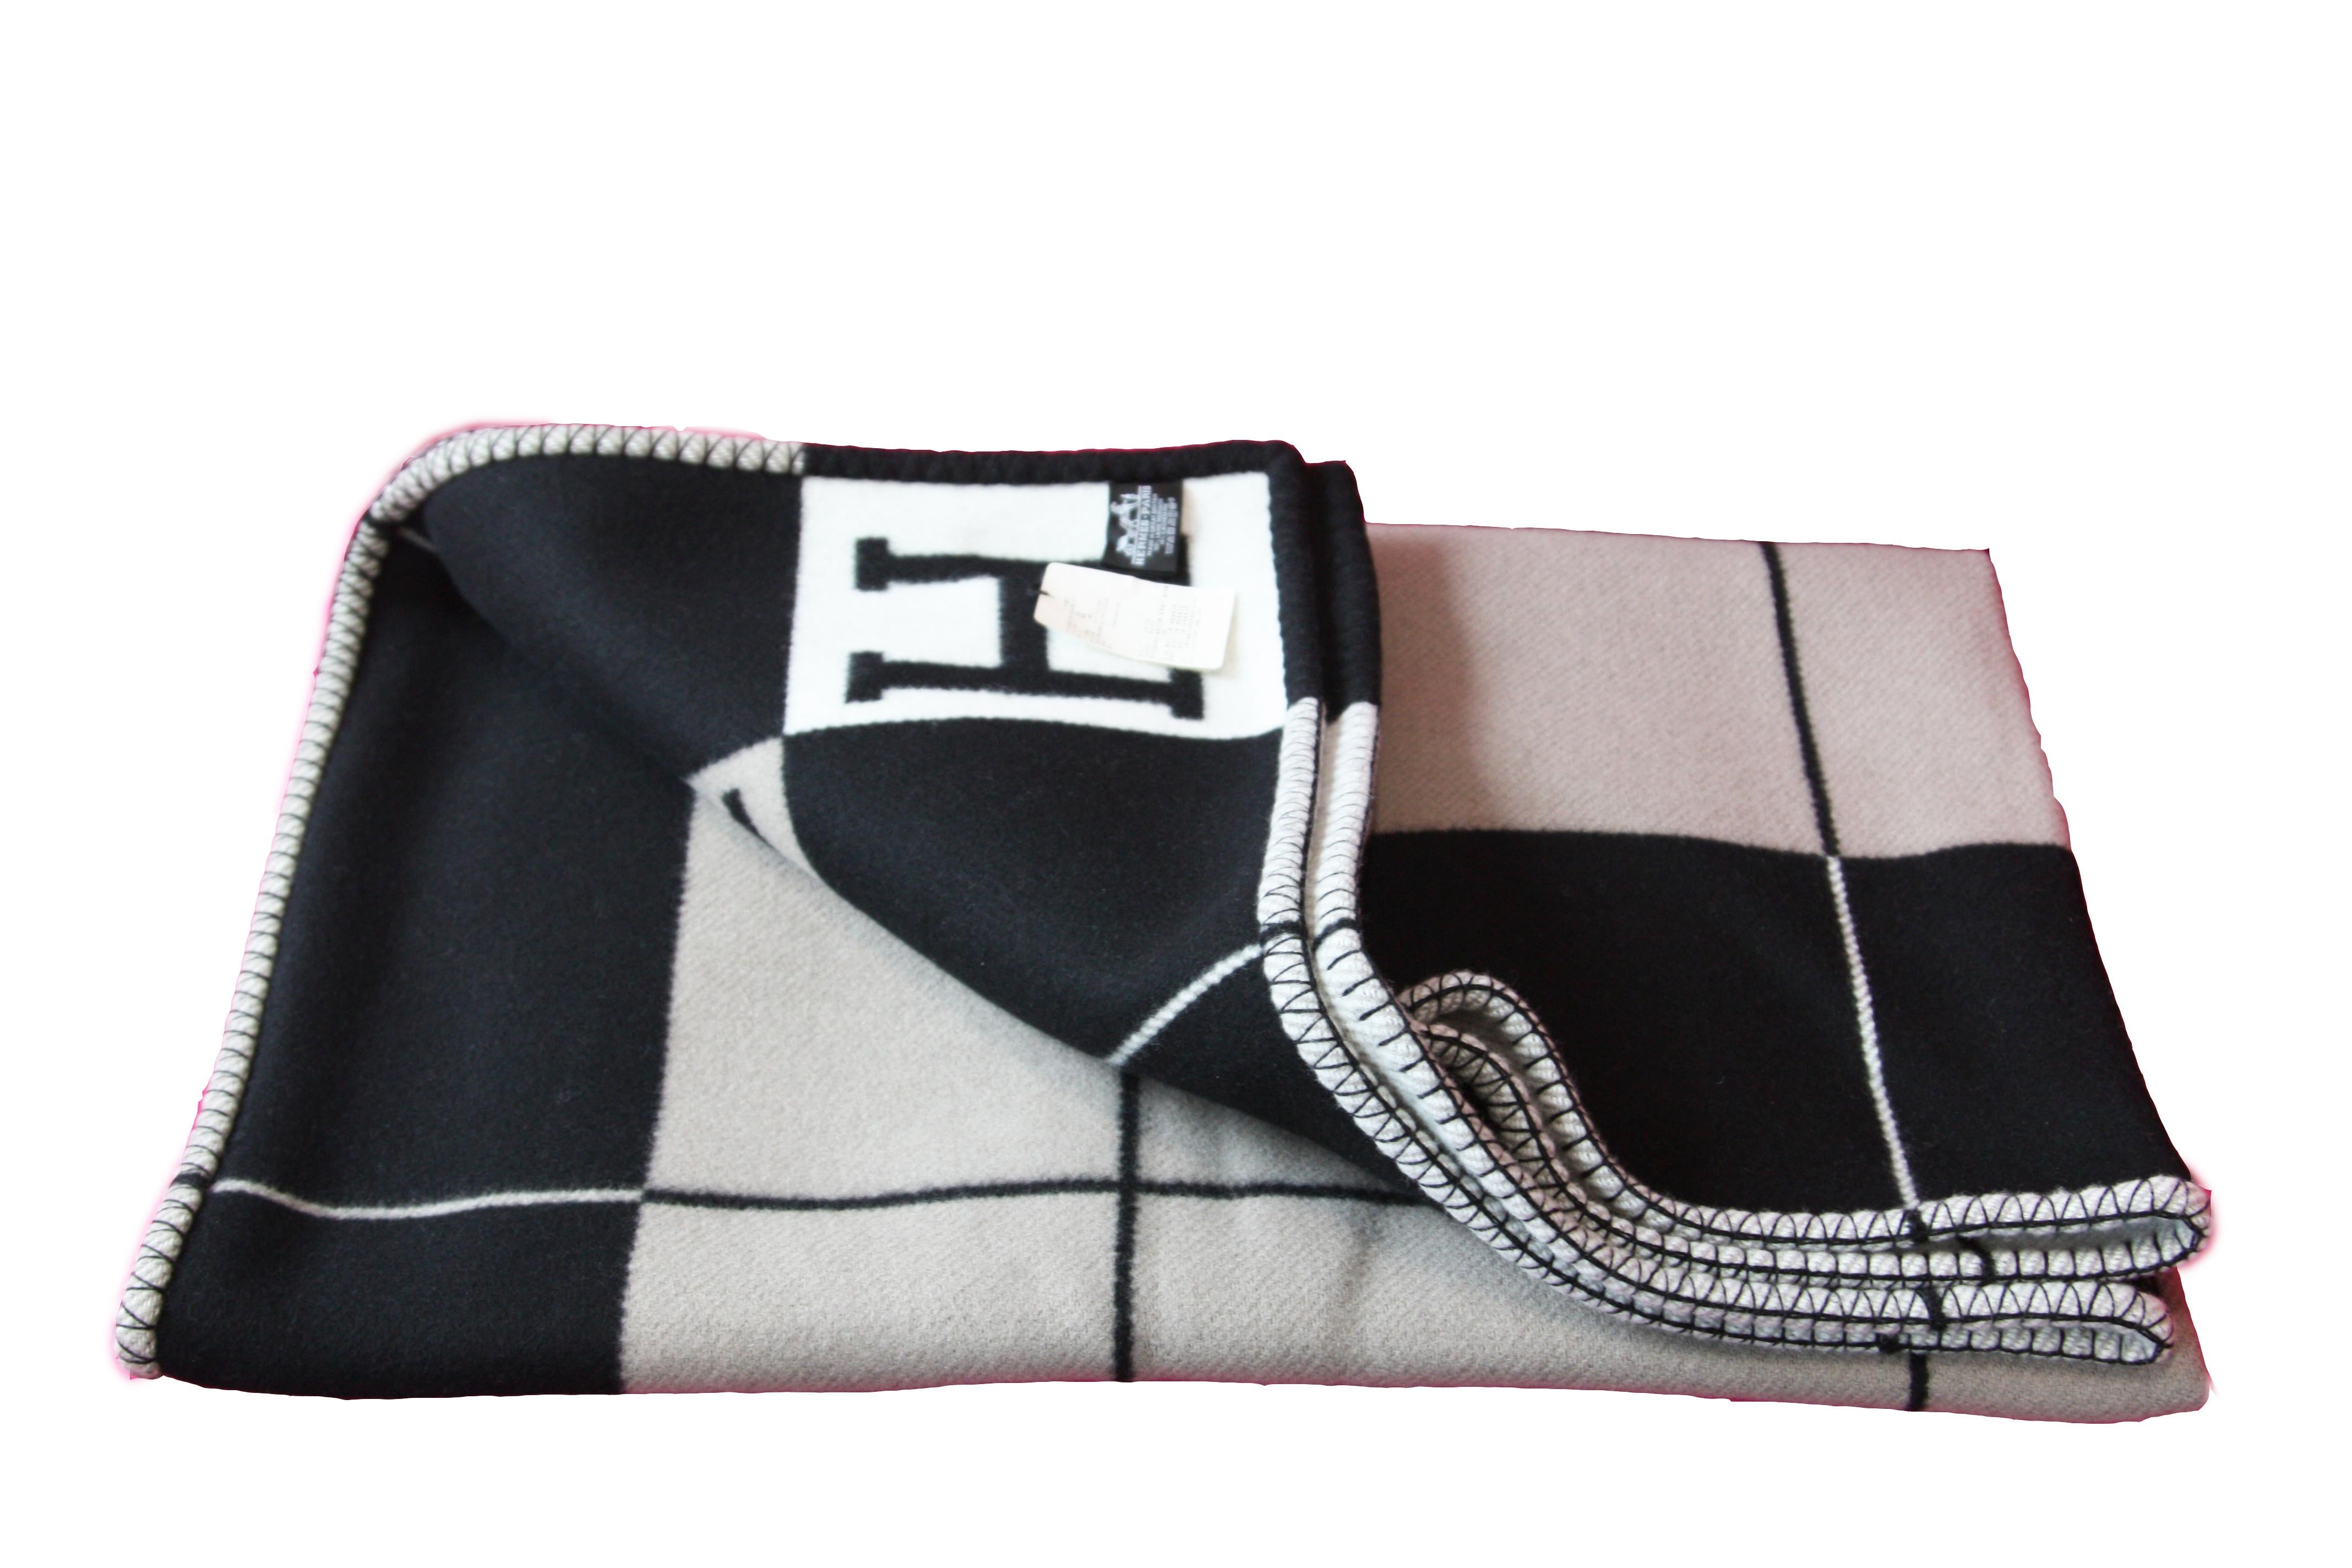 Hermes throw blanket (90% merino wool, 10% cashmere)
Measures 53